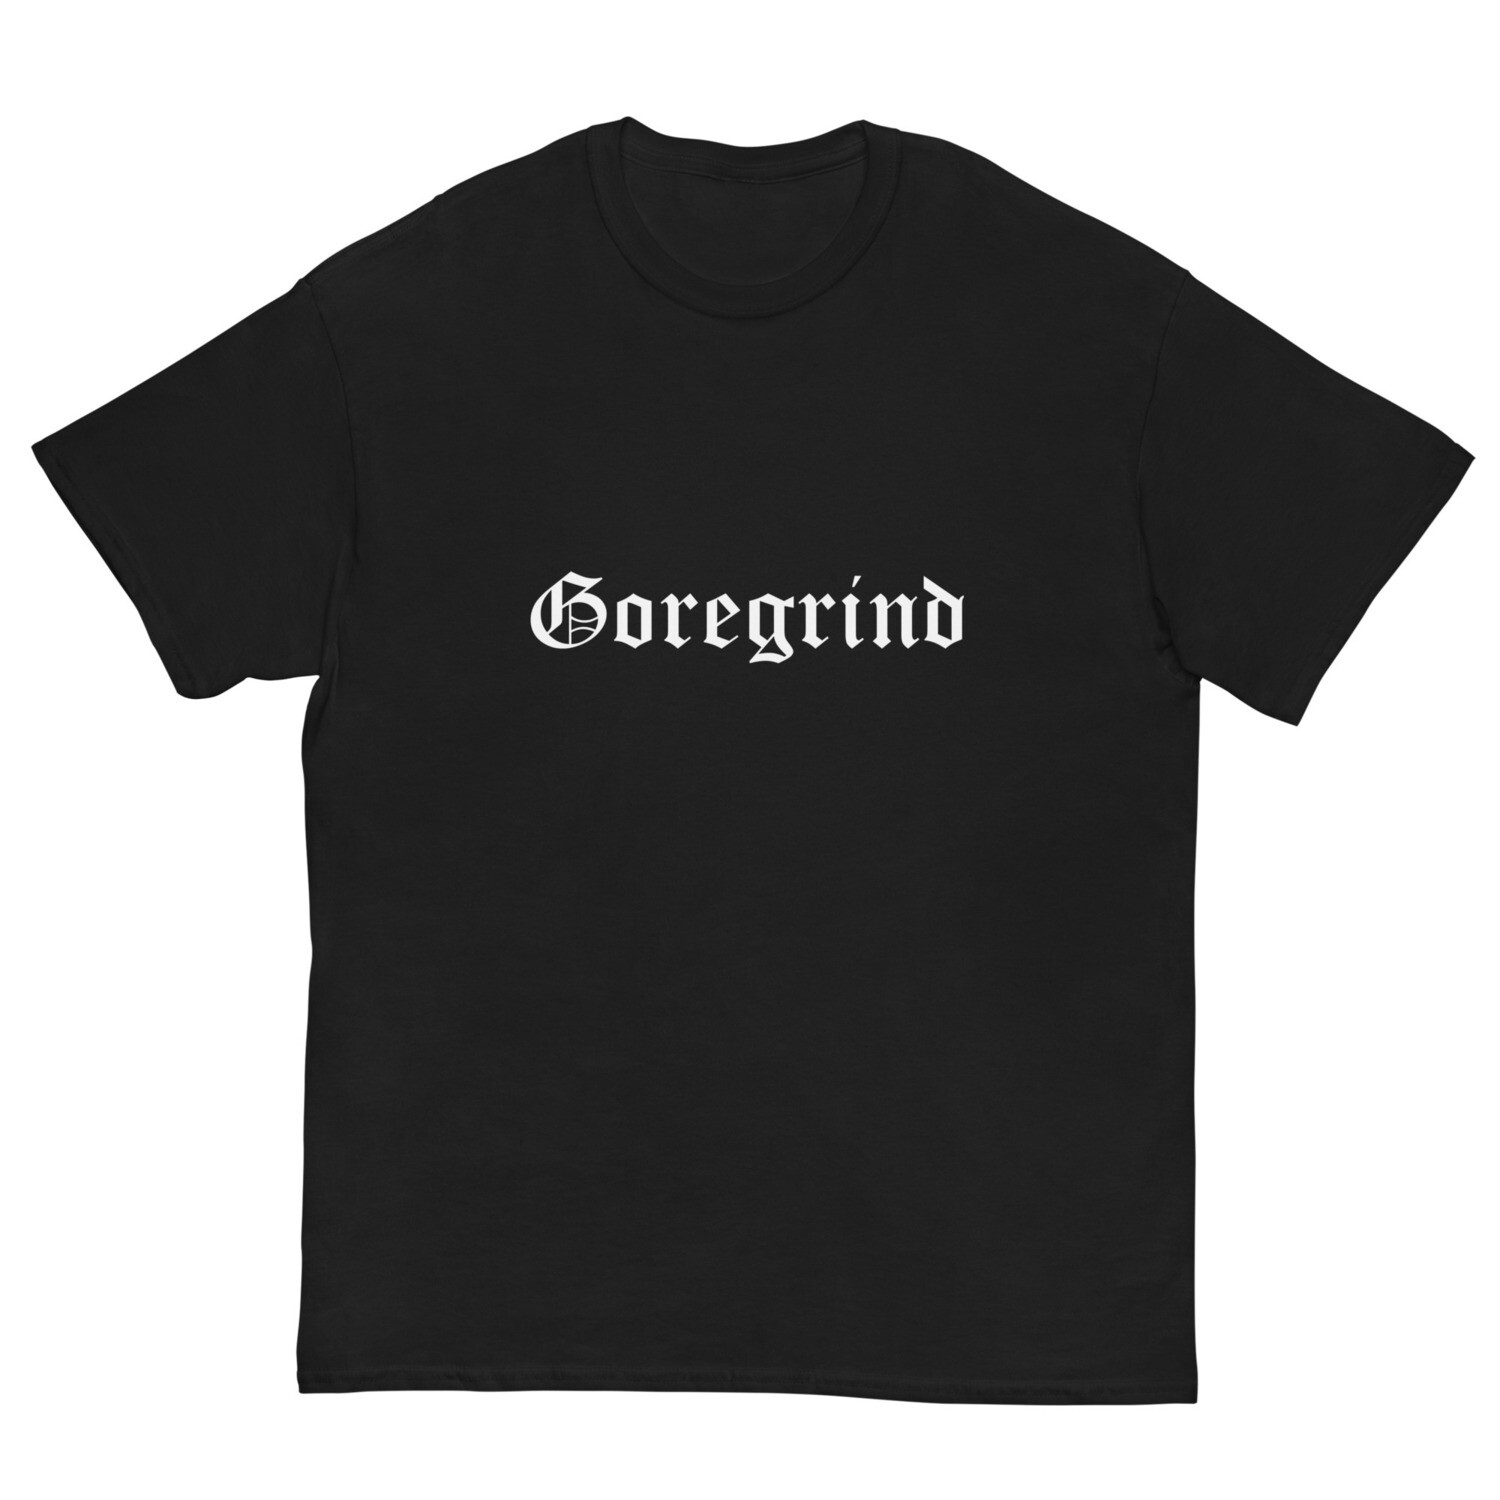 Goregrind - T-Shirt